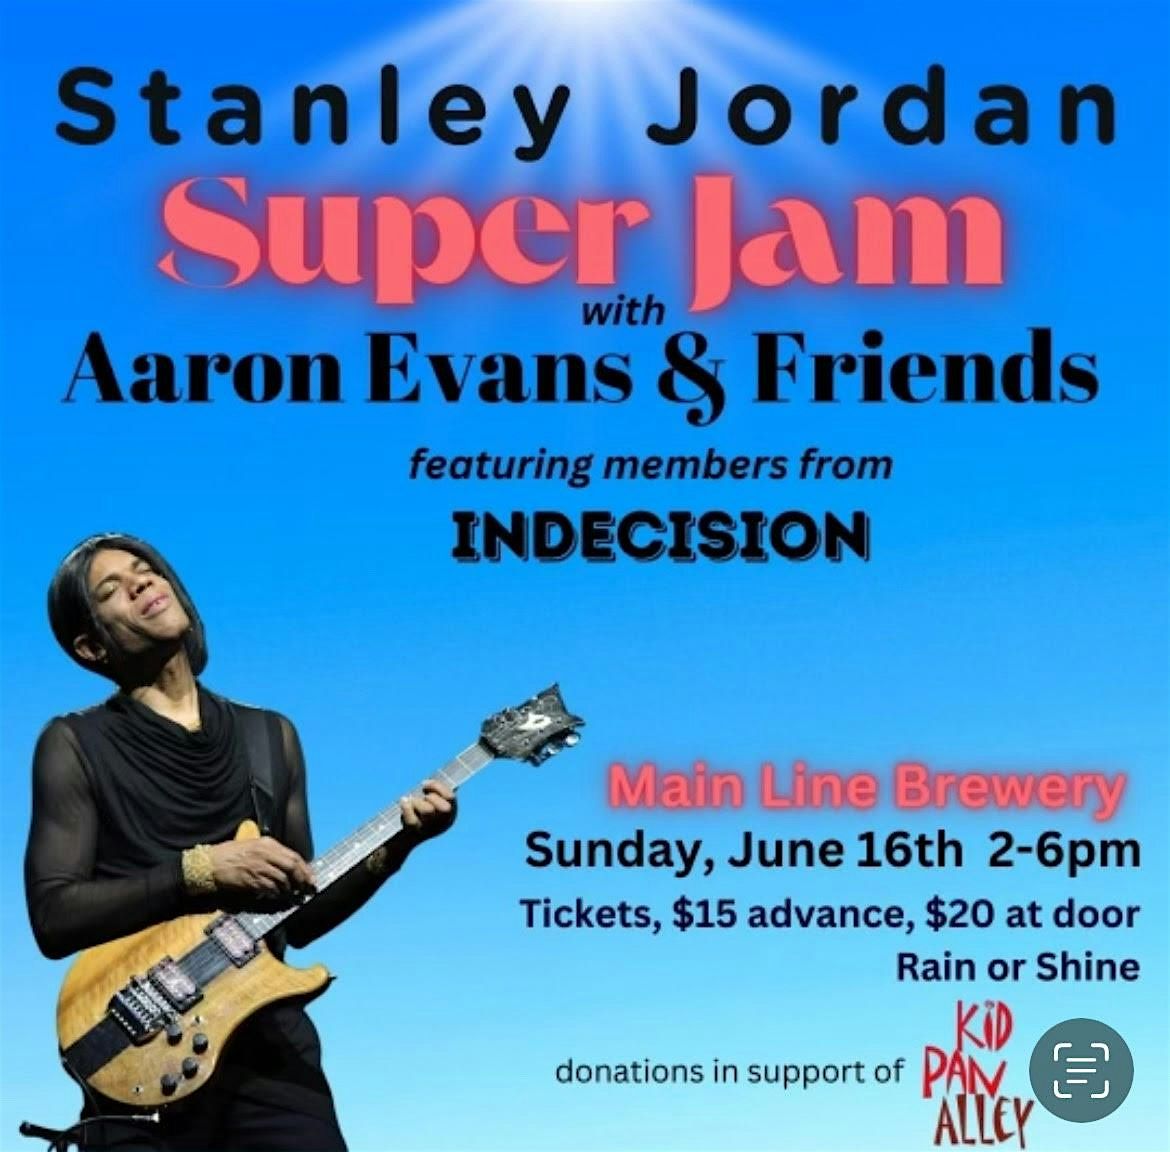 Stanley Jordan SUPER JAM with Aaron Evans & Friends